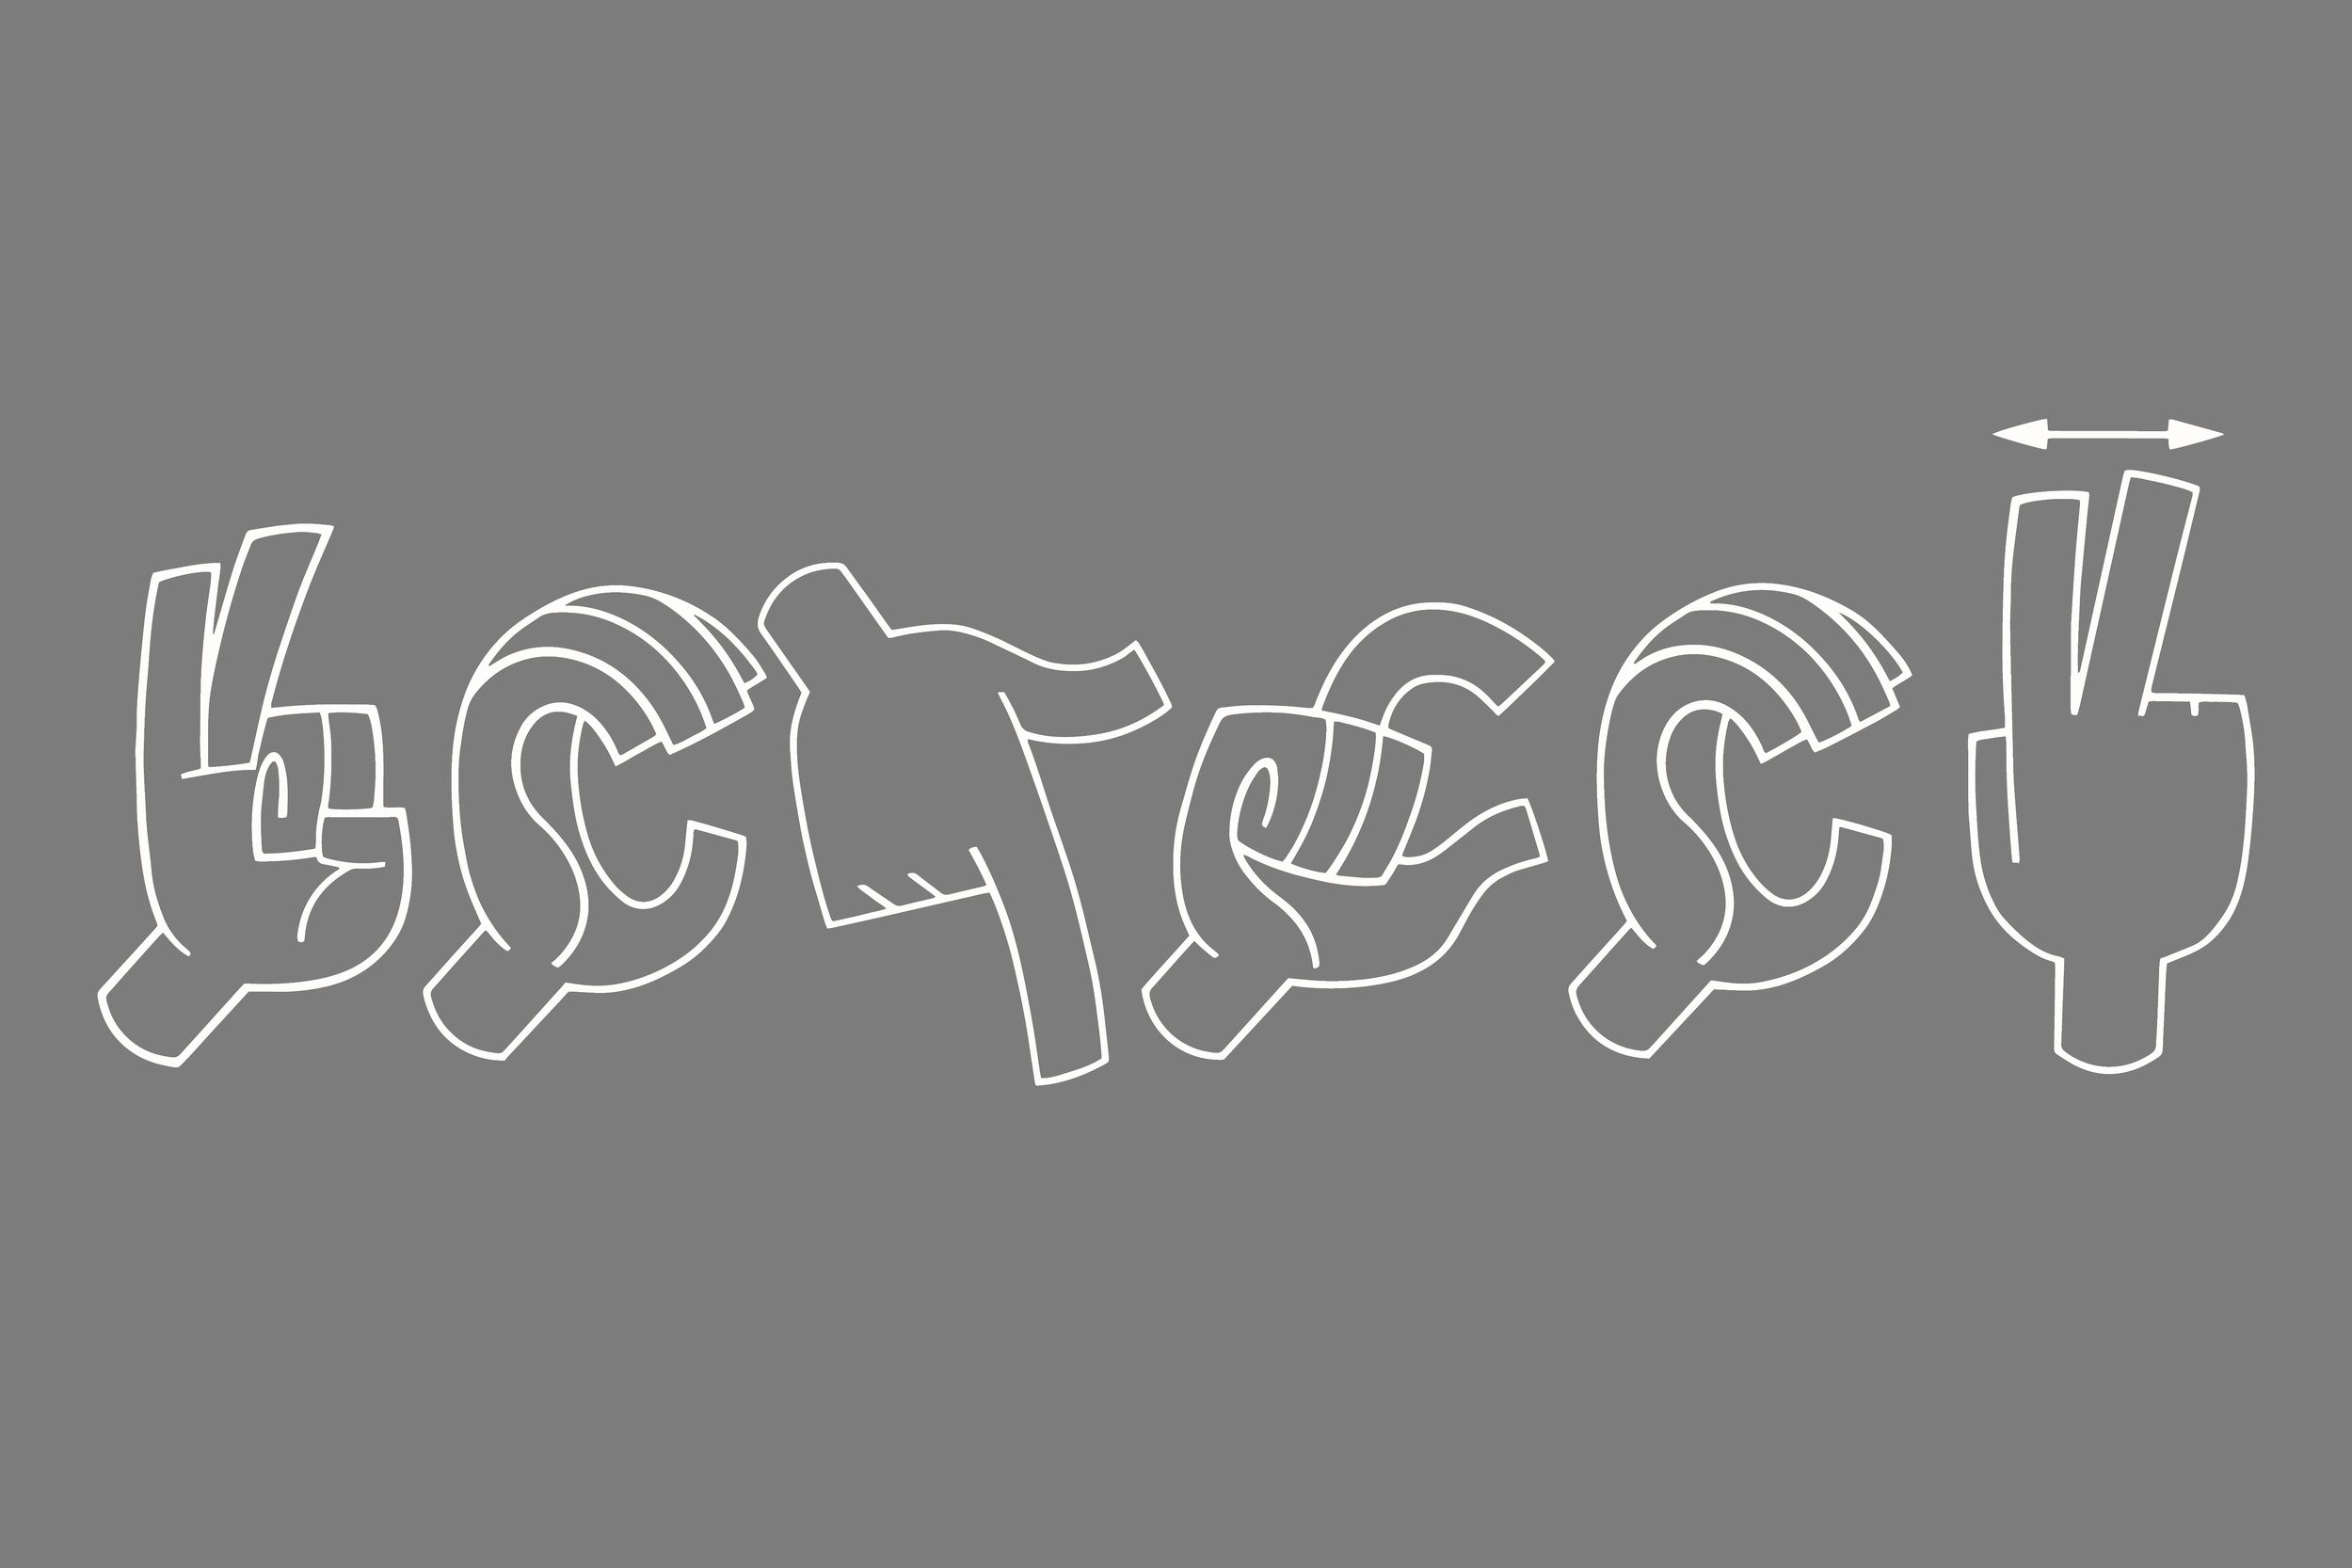 Белые схематические изображения рук, показывающих жесты на РЖЯ, на сером фоне